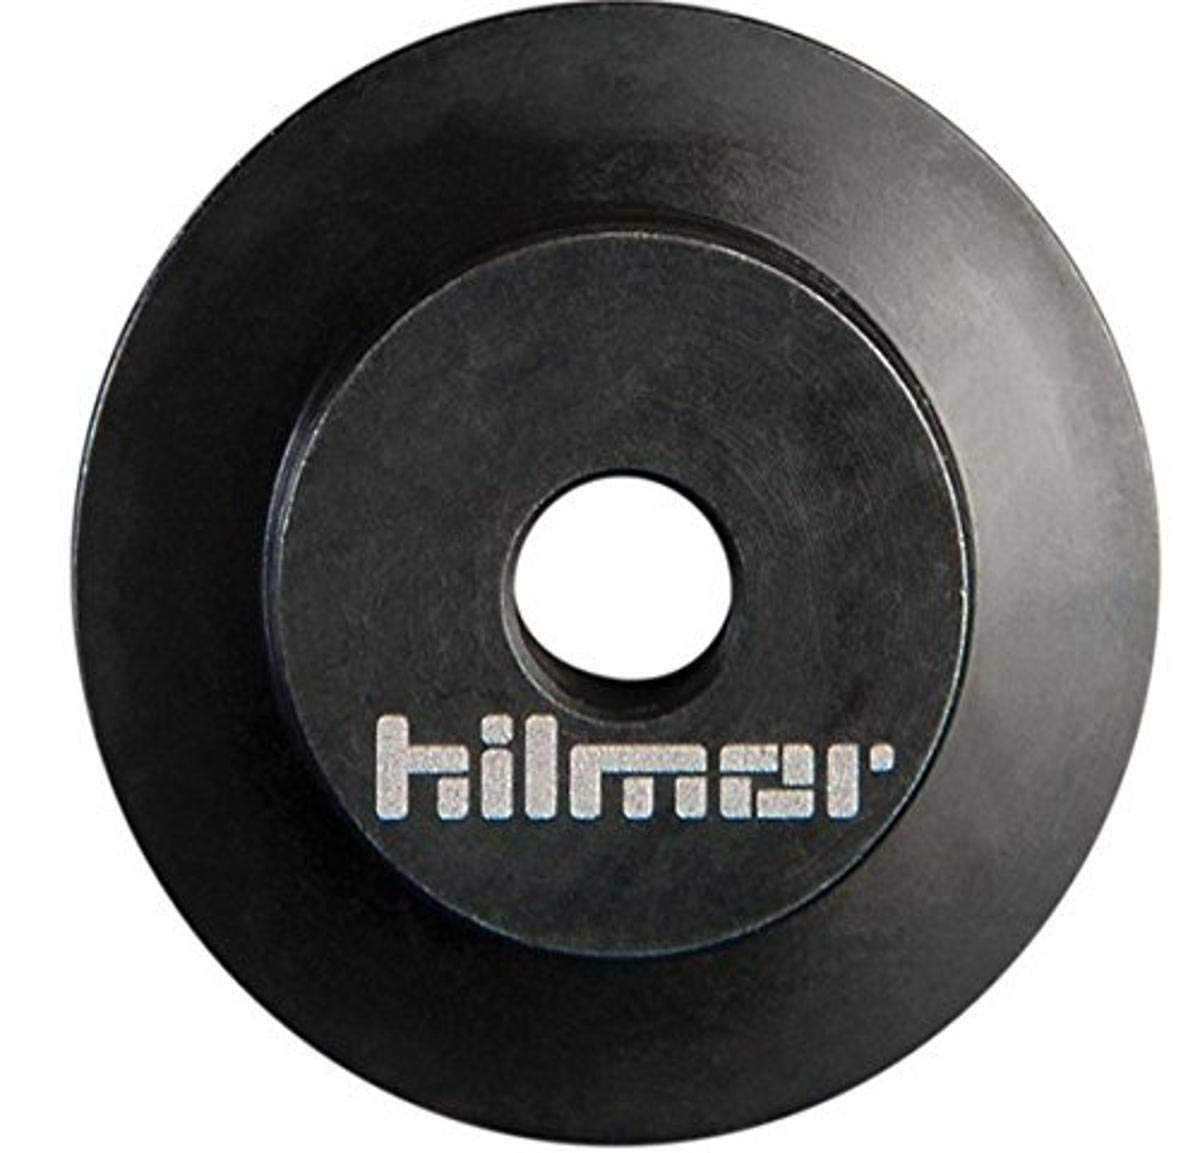 hilmor 1885386 Tube Cutter Wheel (Pack of 2), Small